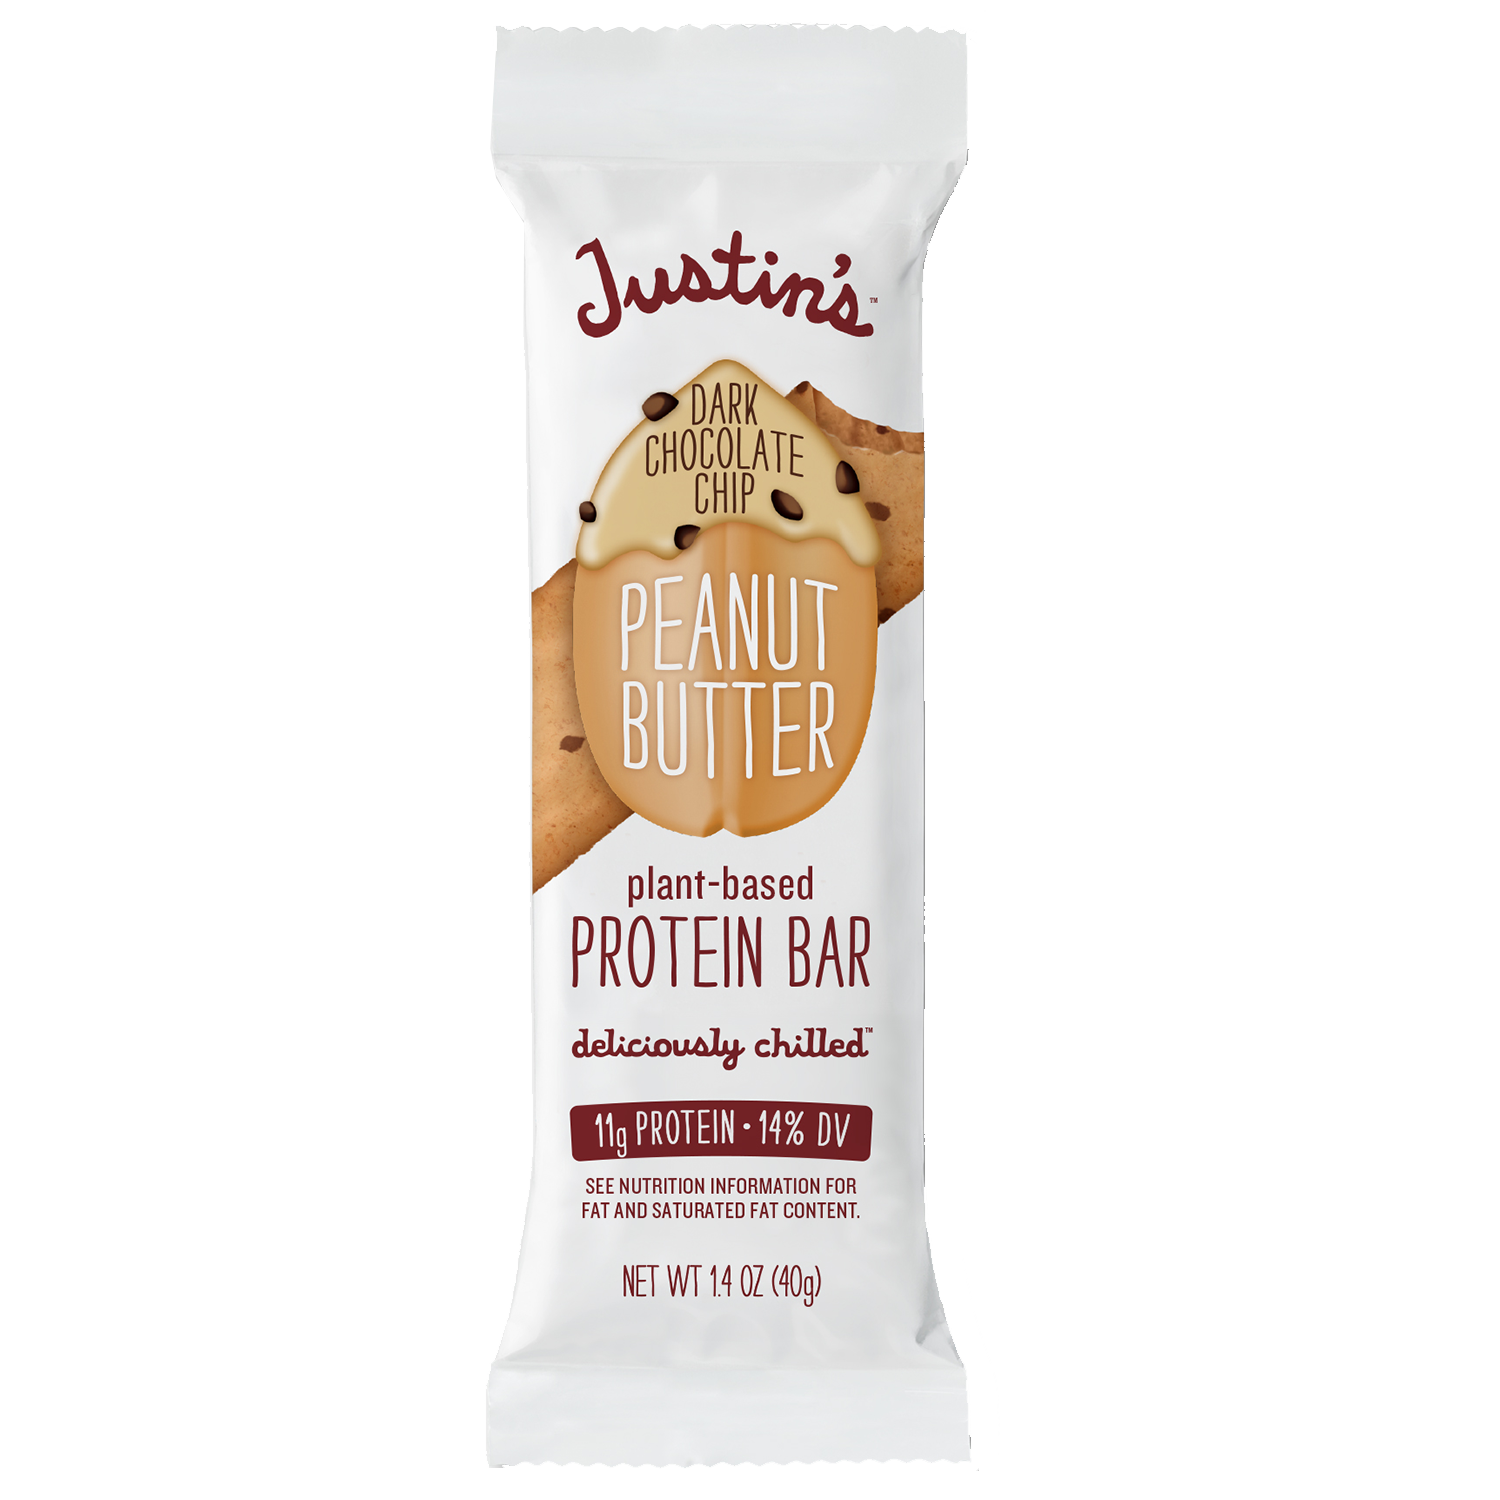 Dark Chocolate Chip Peanut Butter Protein Bar